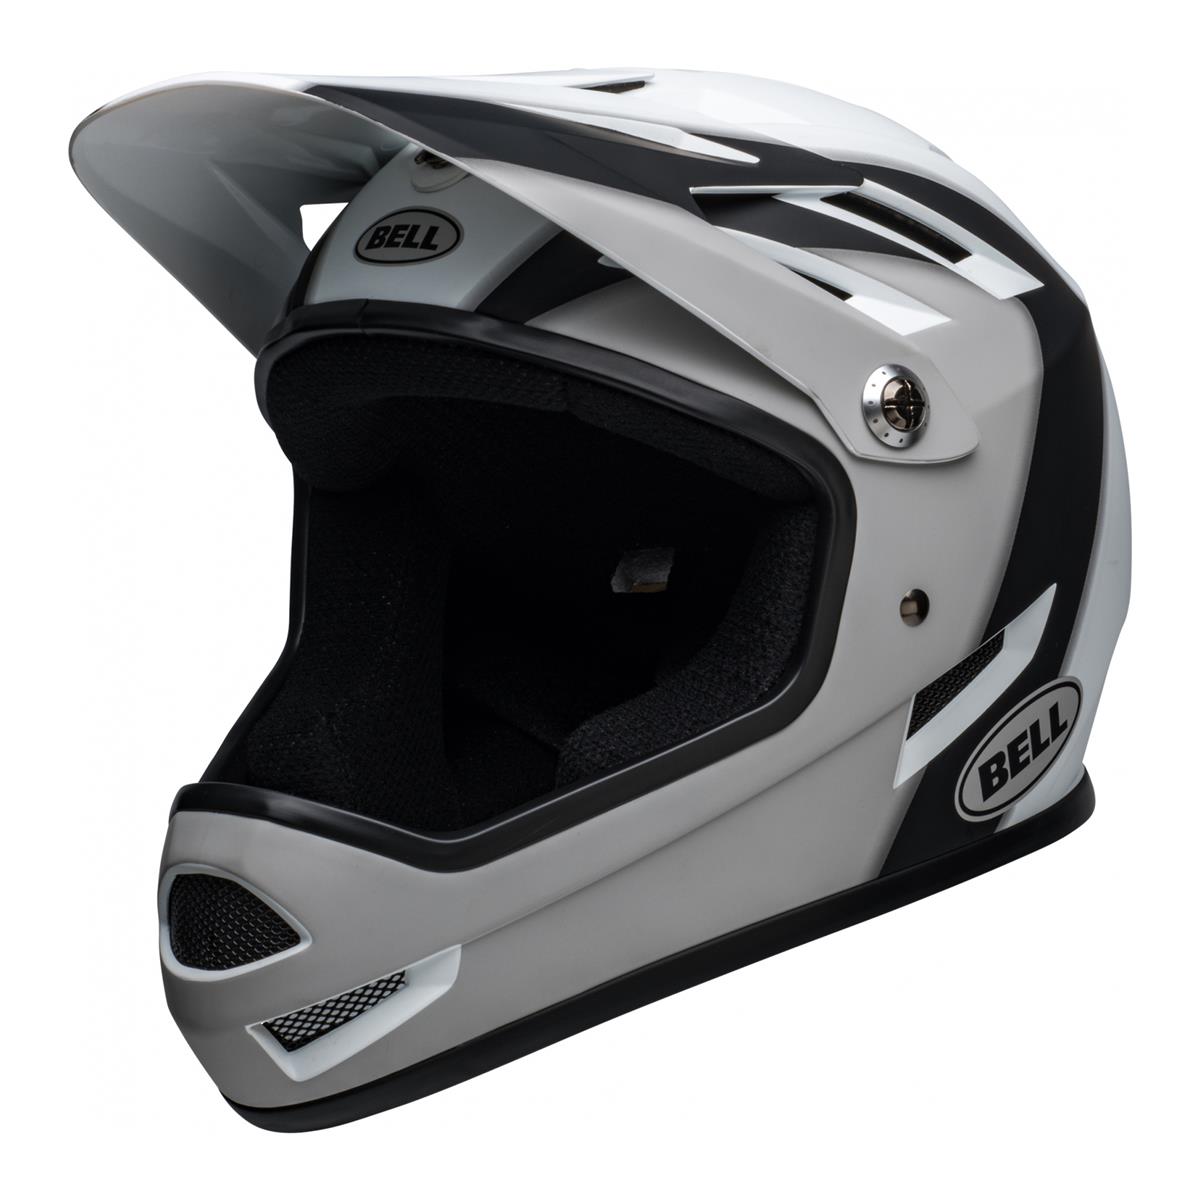 Sanction Full Face Helmet Black/White Size XS (48-51cm)